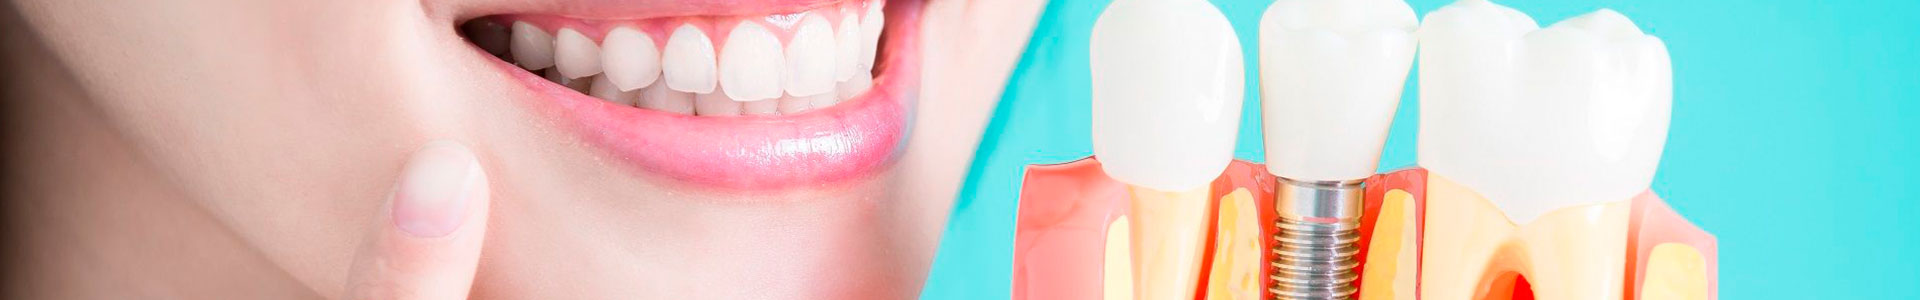 Tipos de Implantes Dentários | Qual é o melhor para você?